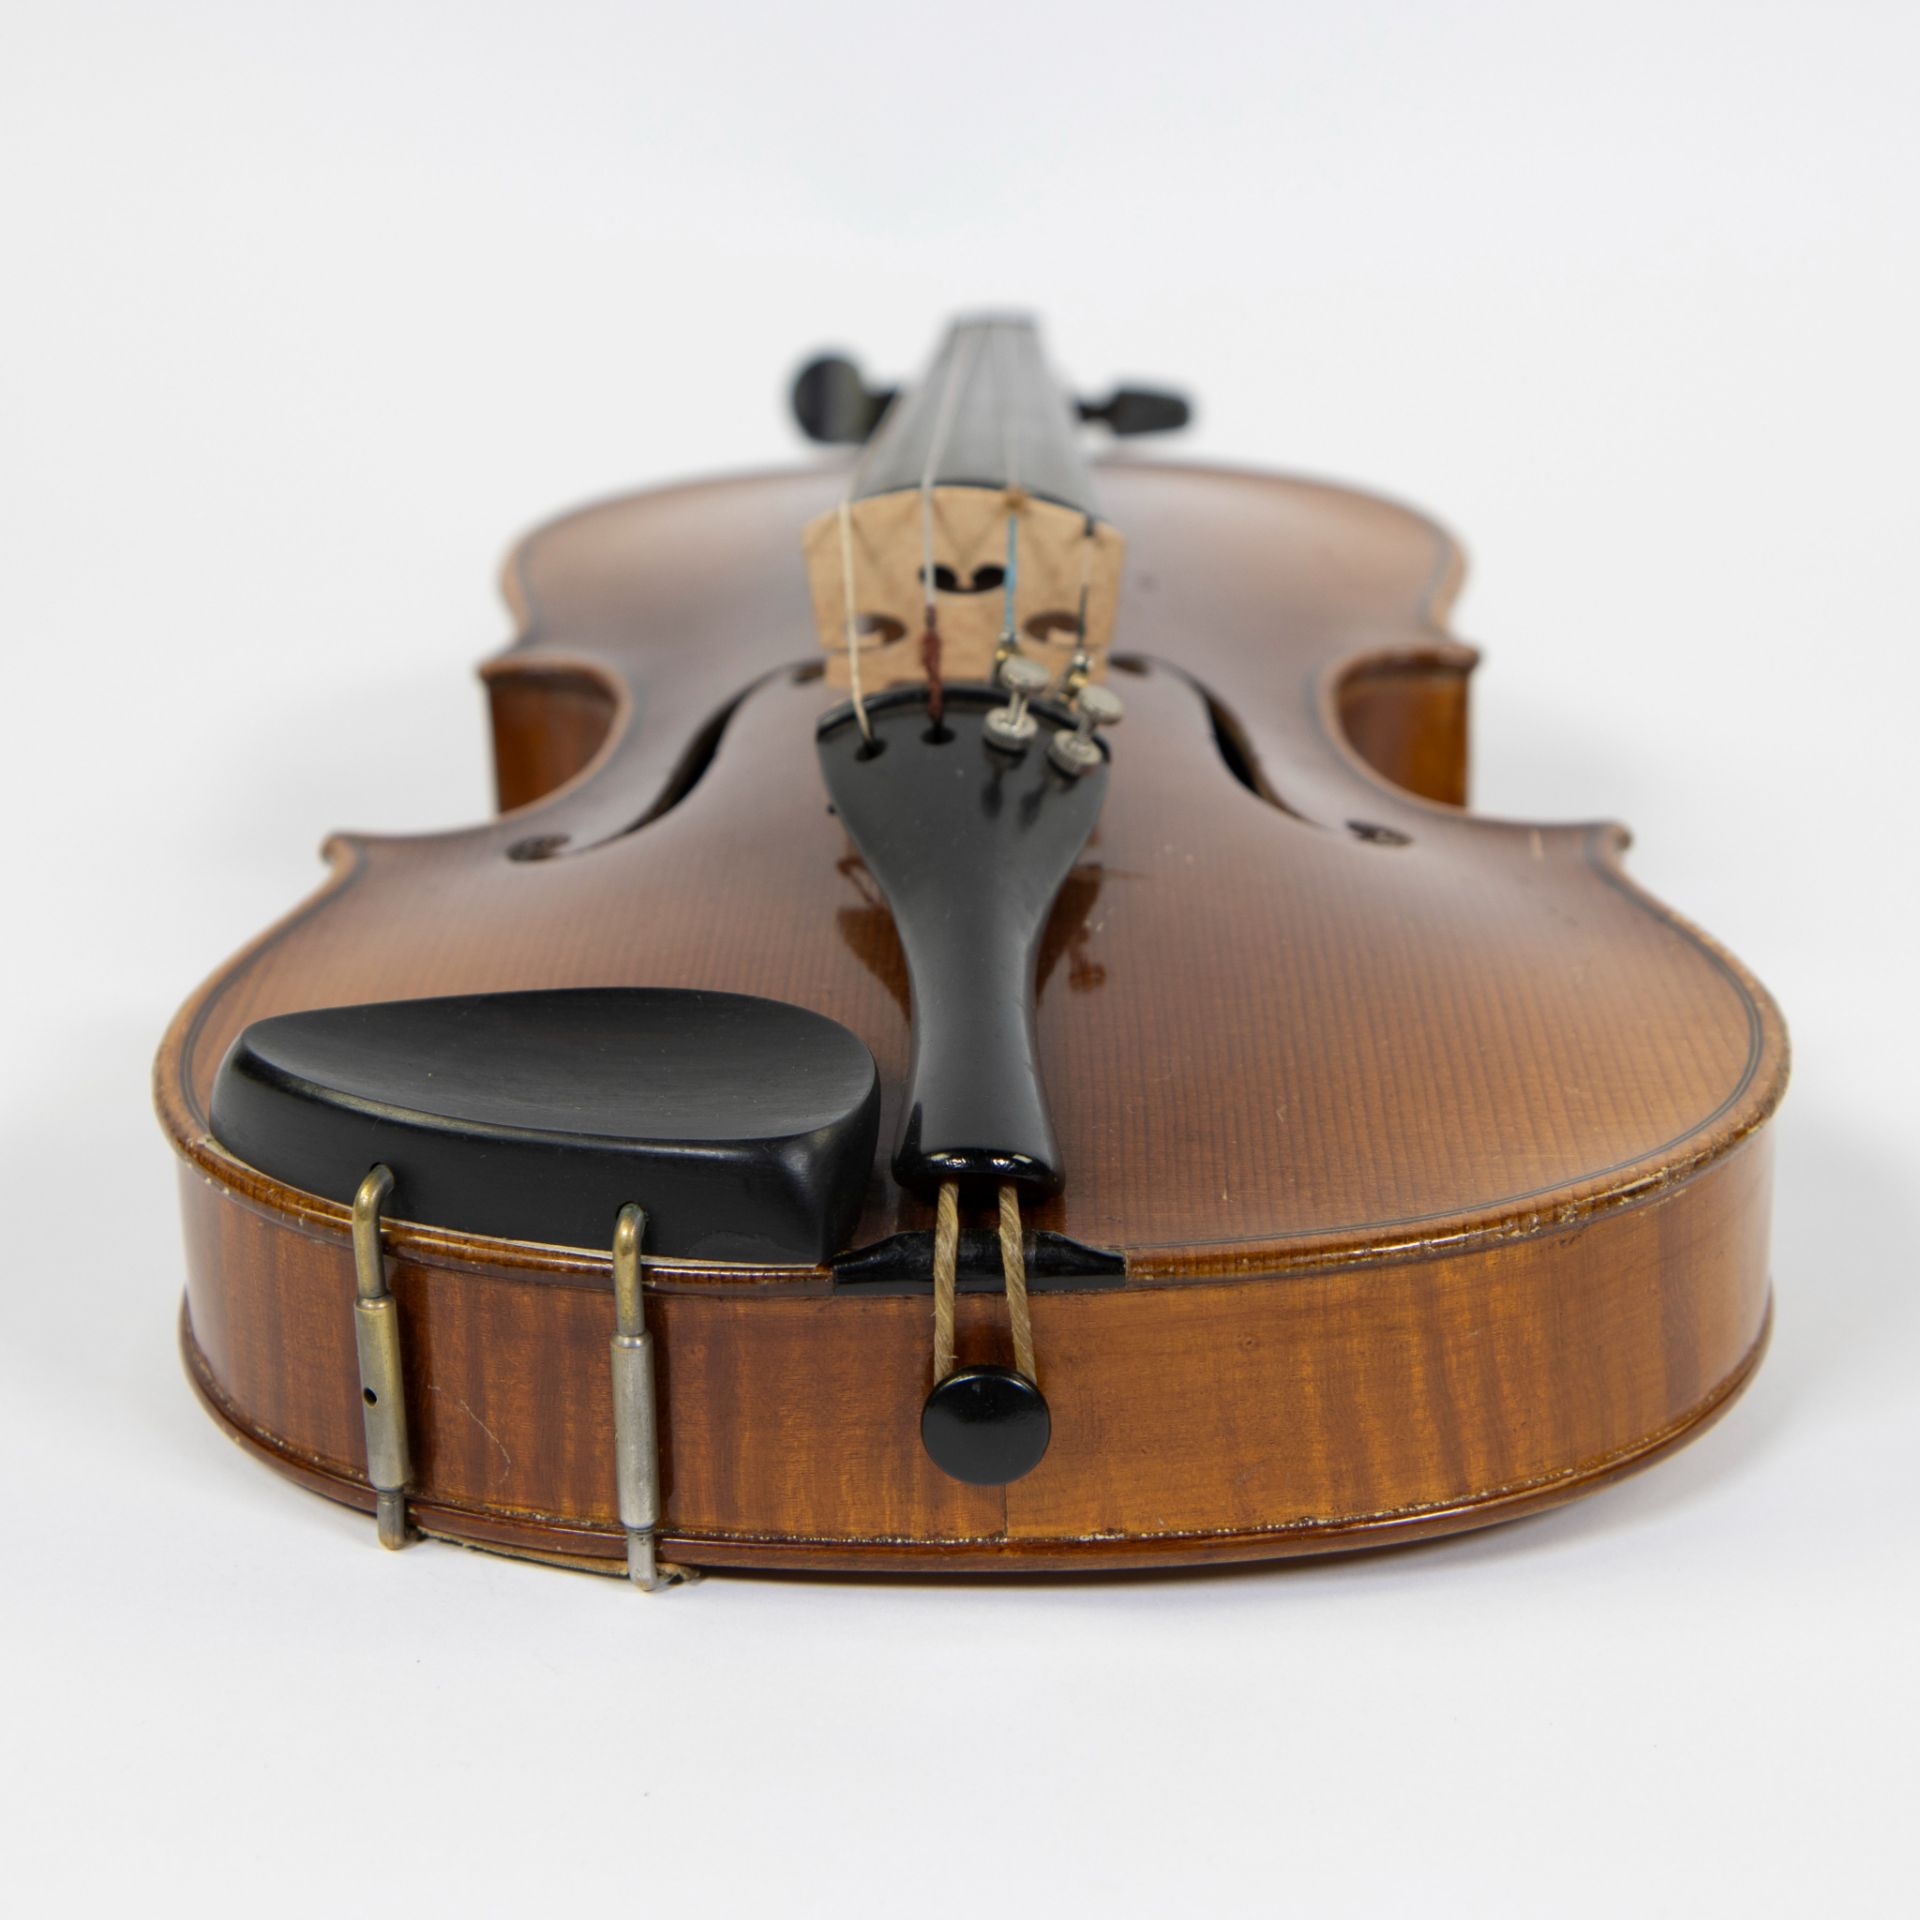 Violin no label, 3/4, 339mm - Image 5 of 5